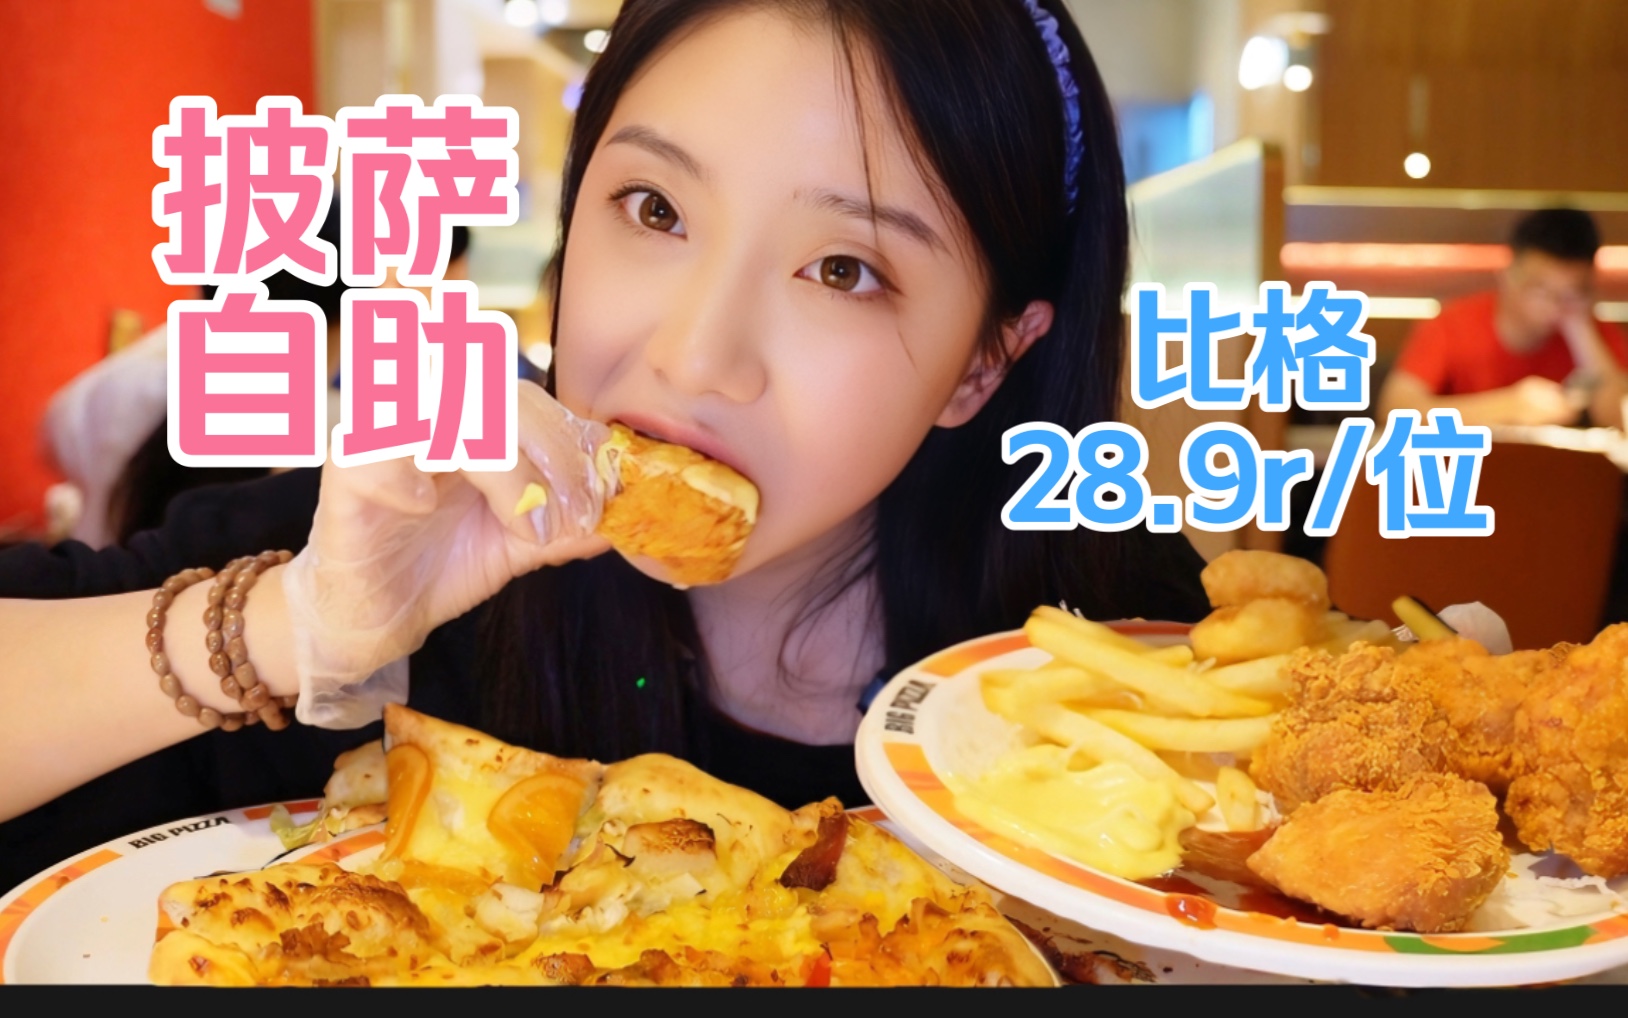 上海28.9披萨自助！！披萨、炸鸡、甜品、冰激凌全都不限量吃到爽！猜猜我吃了多少～